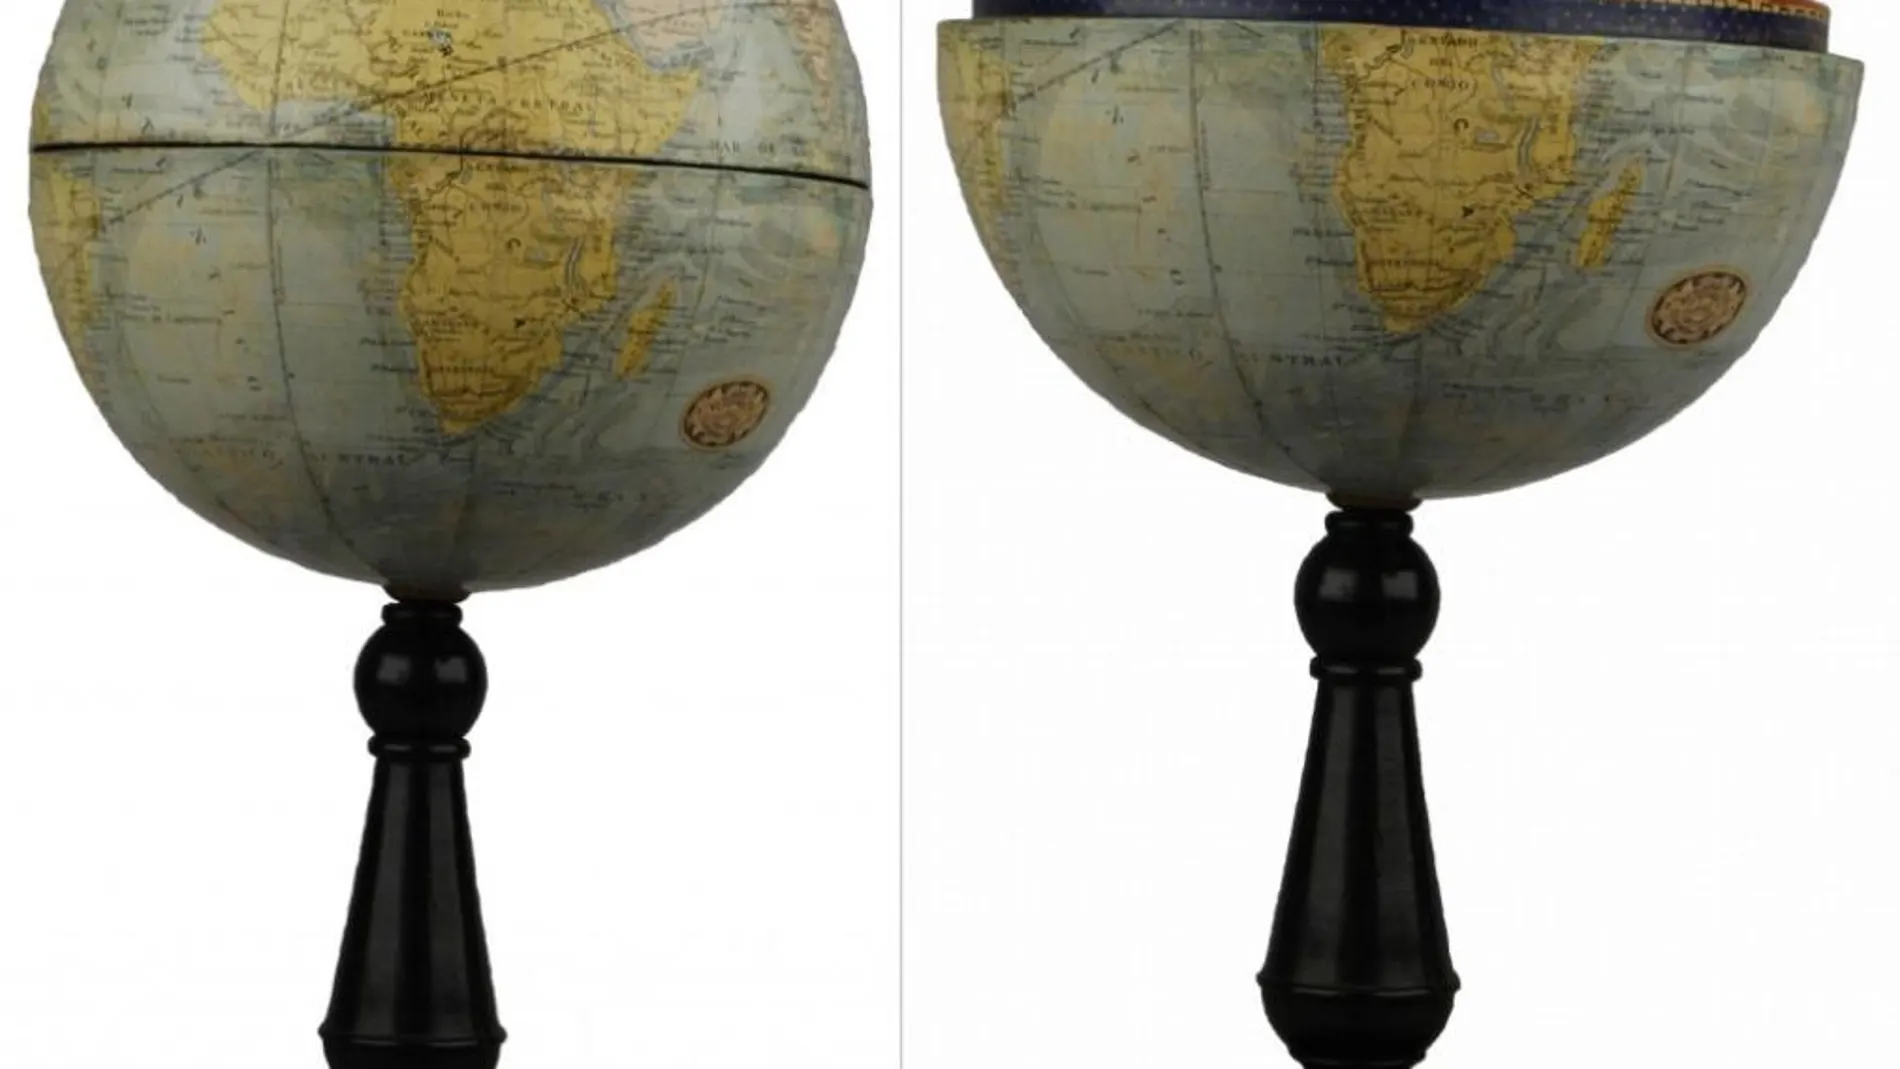 Composición en la que se aprecia lo que hace único a este globo. Su hemisferio norte se levanta para descubrir un planetario y una enciclopedia ilustrada